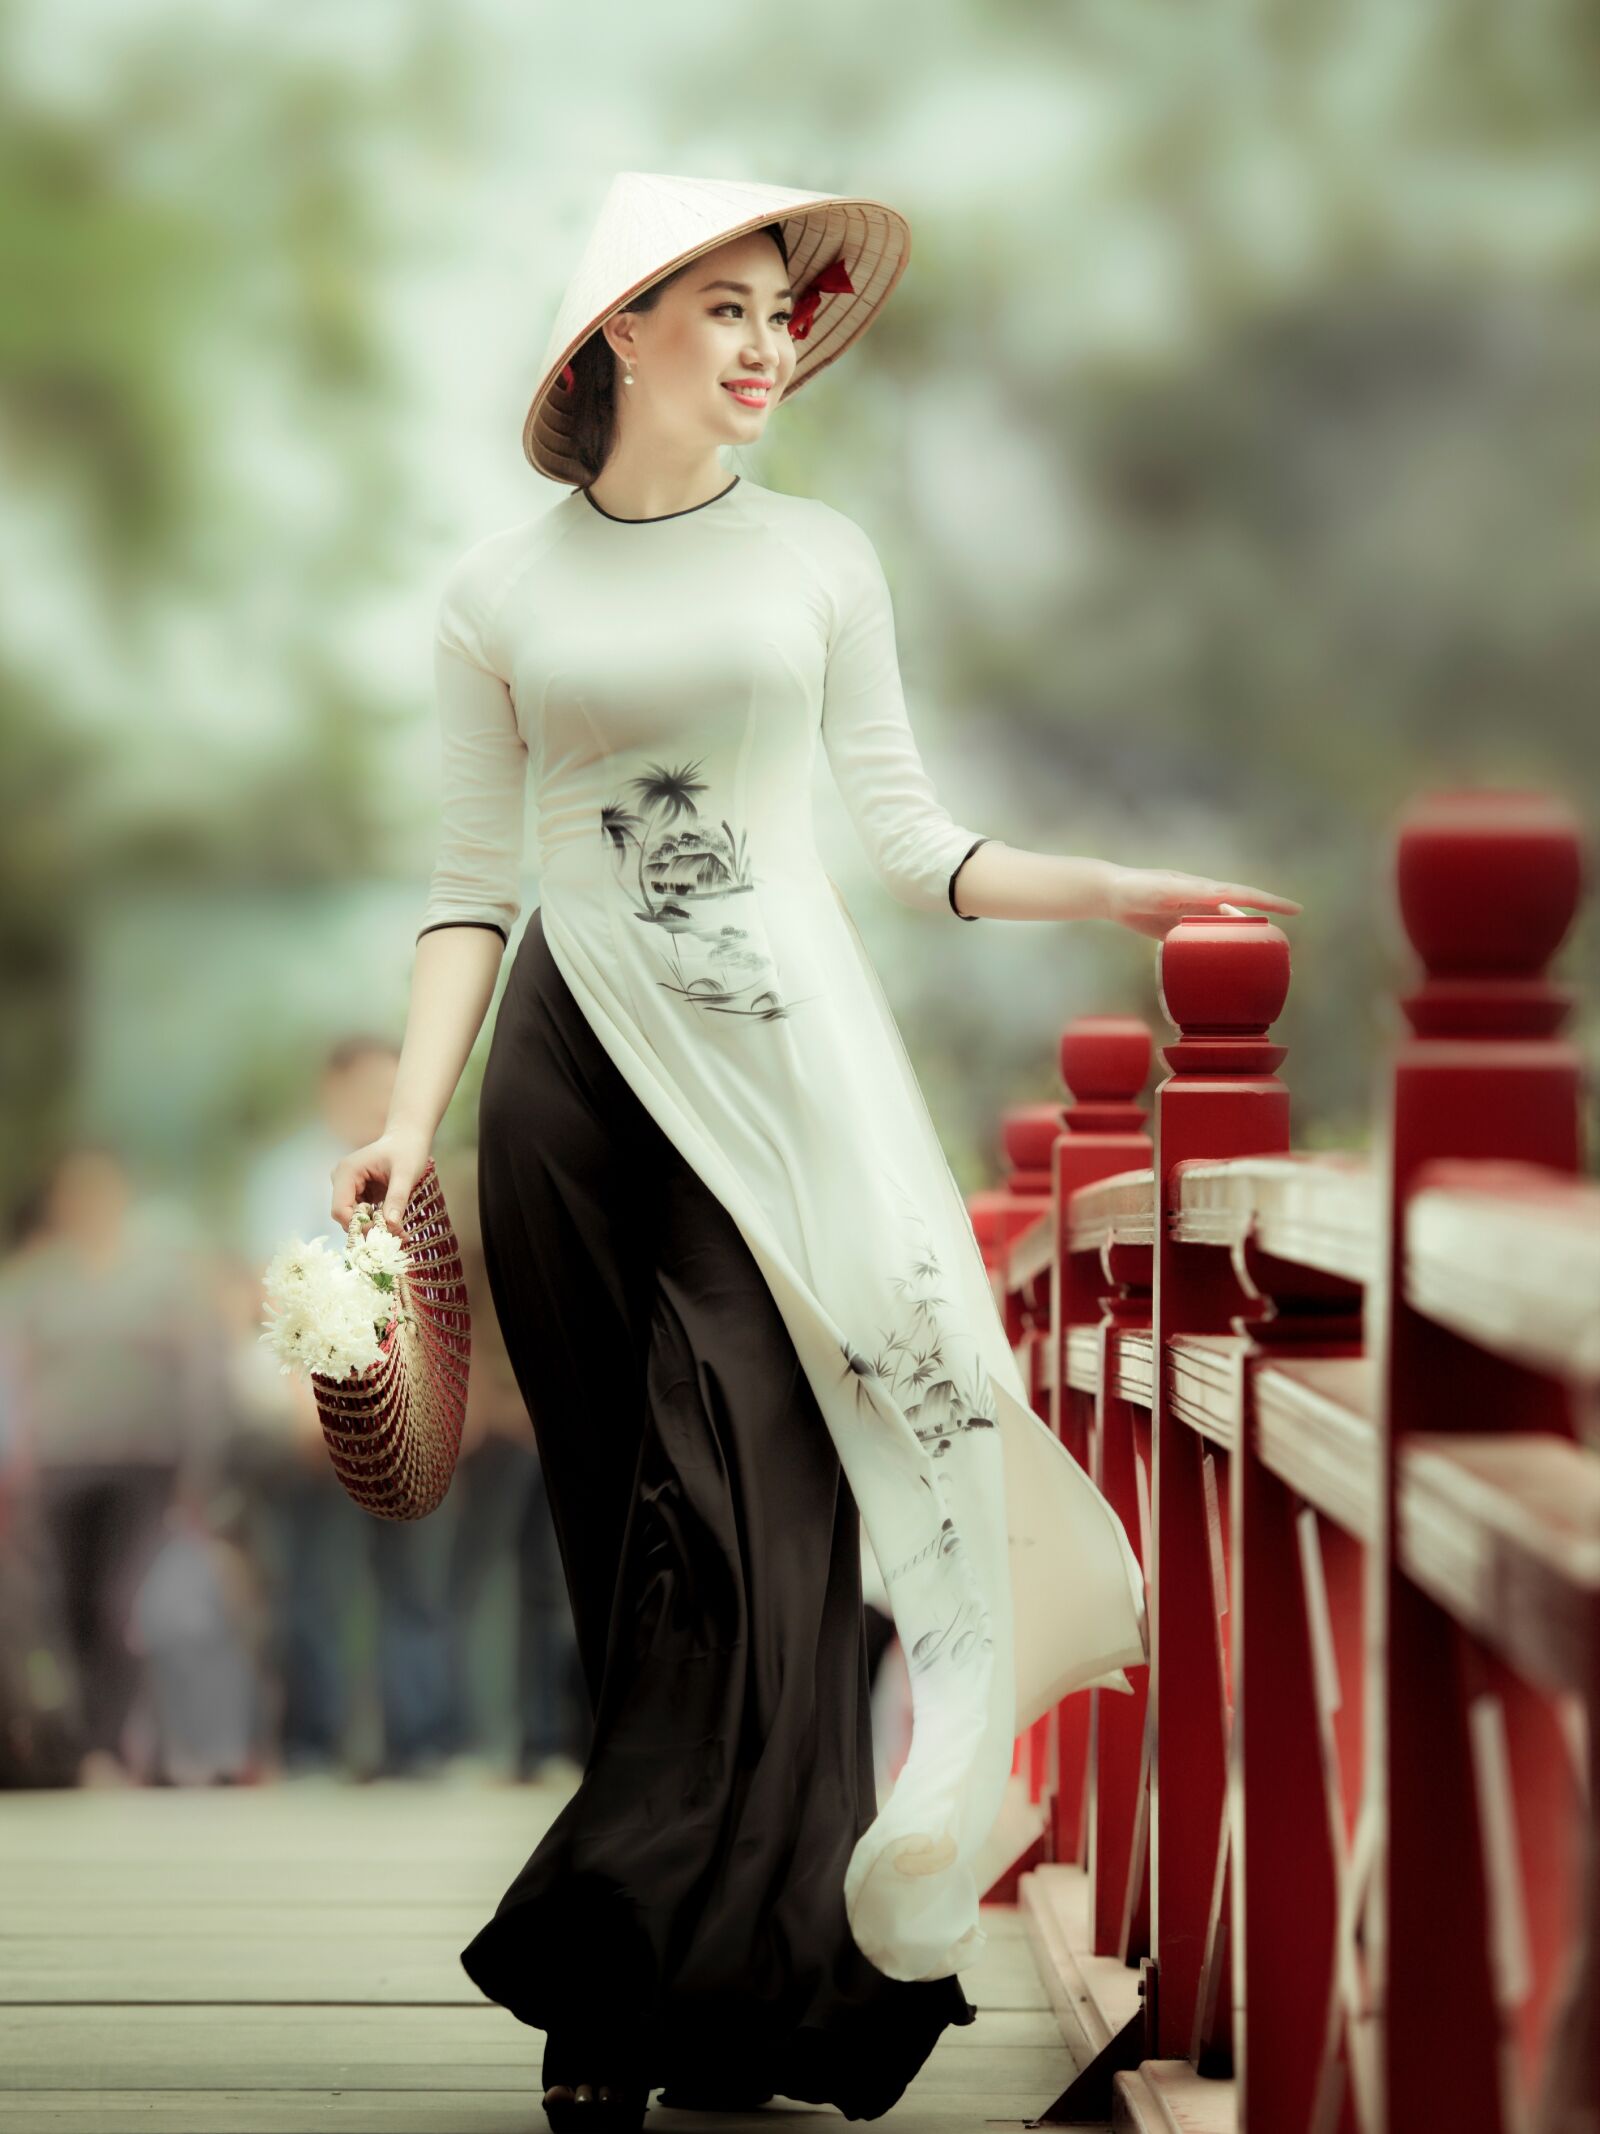 Nikon D5 sample photo. Woman, long dress, fashion photography